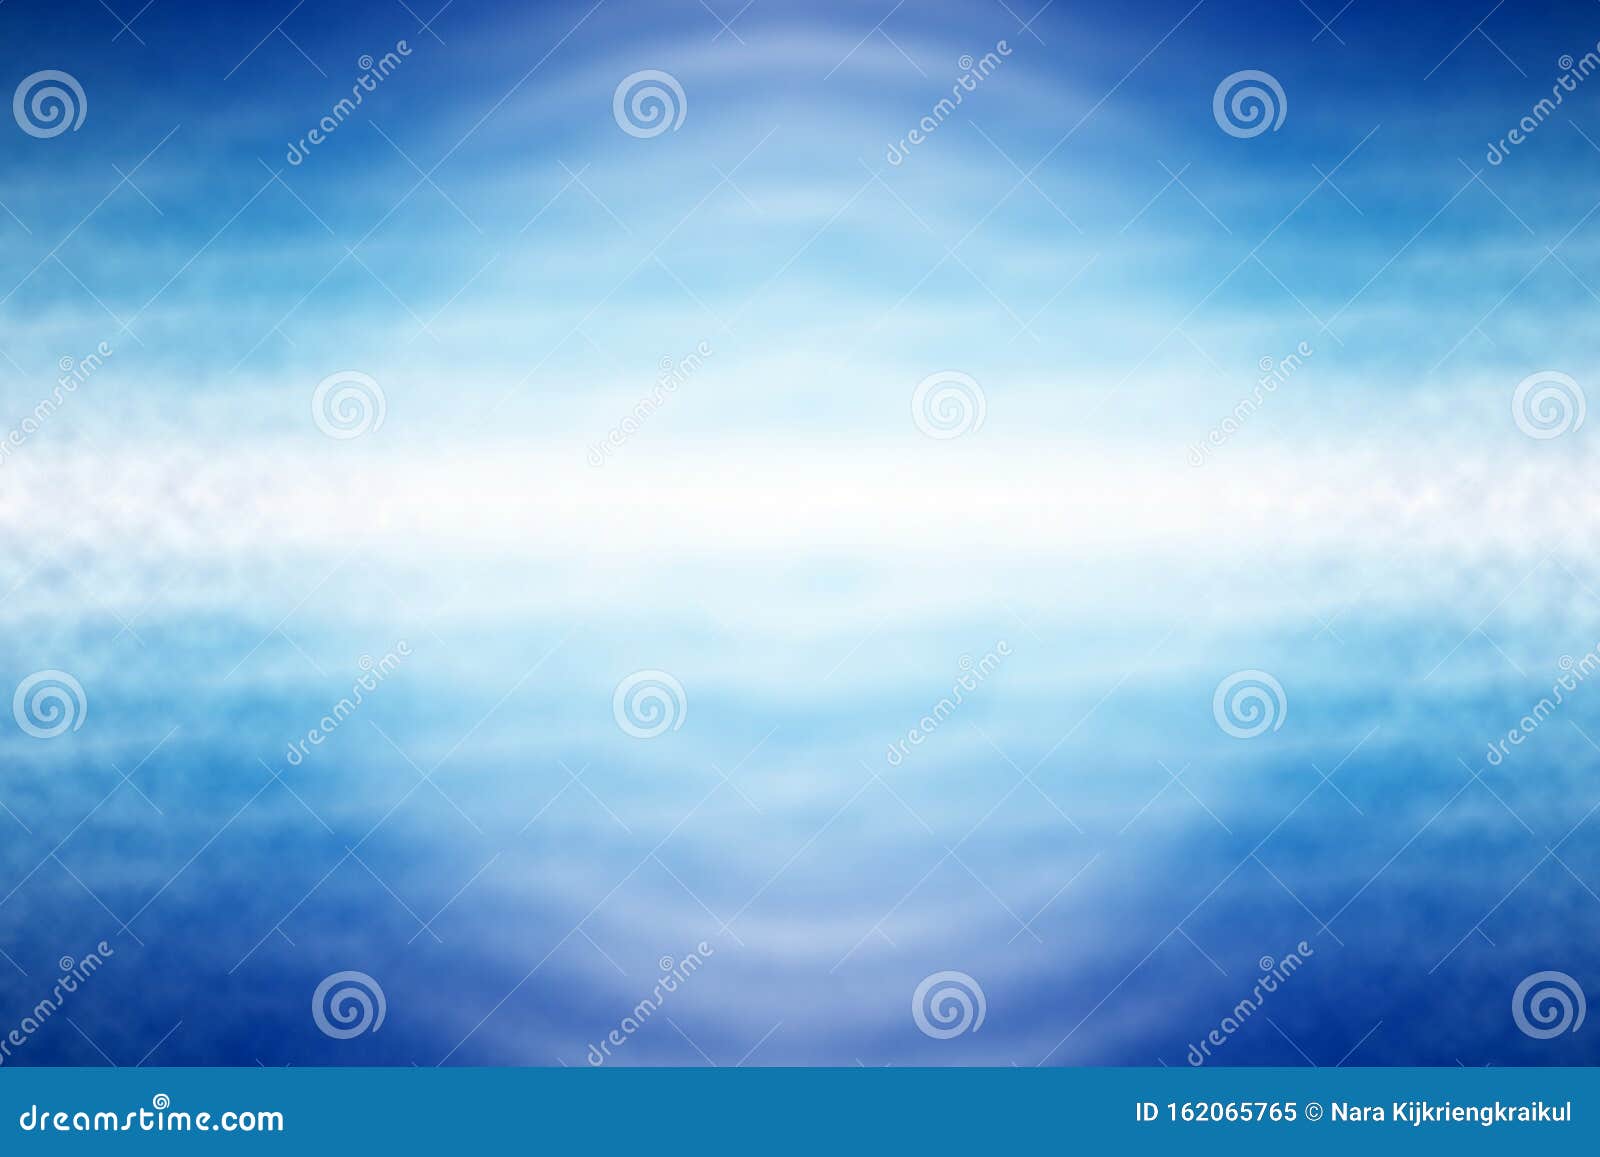 蓝光波海浪壁纸 幻想背景库存例证 插画包括有梯度 钞票 照明设备 蓝蓝 看板卡 天空